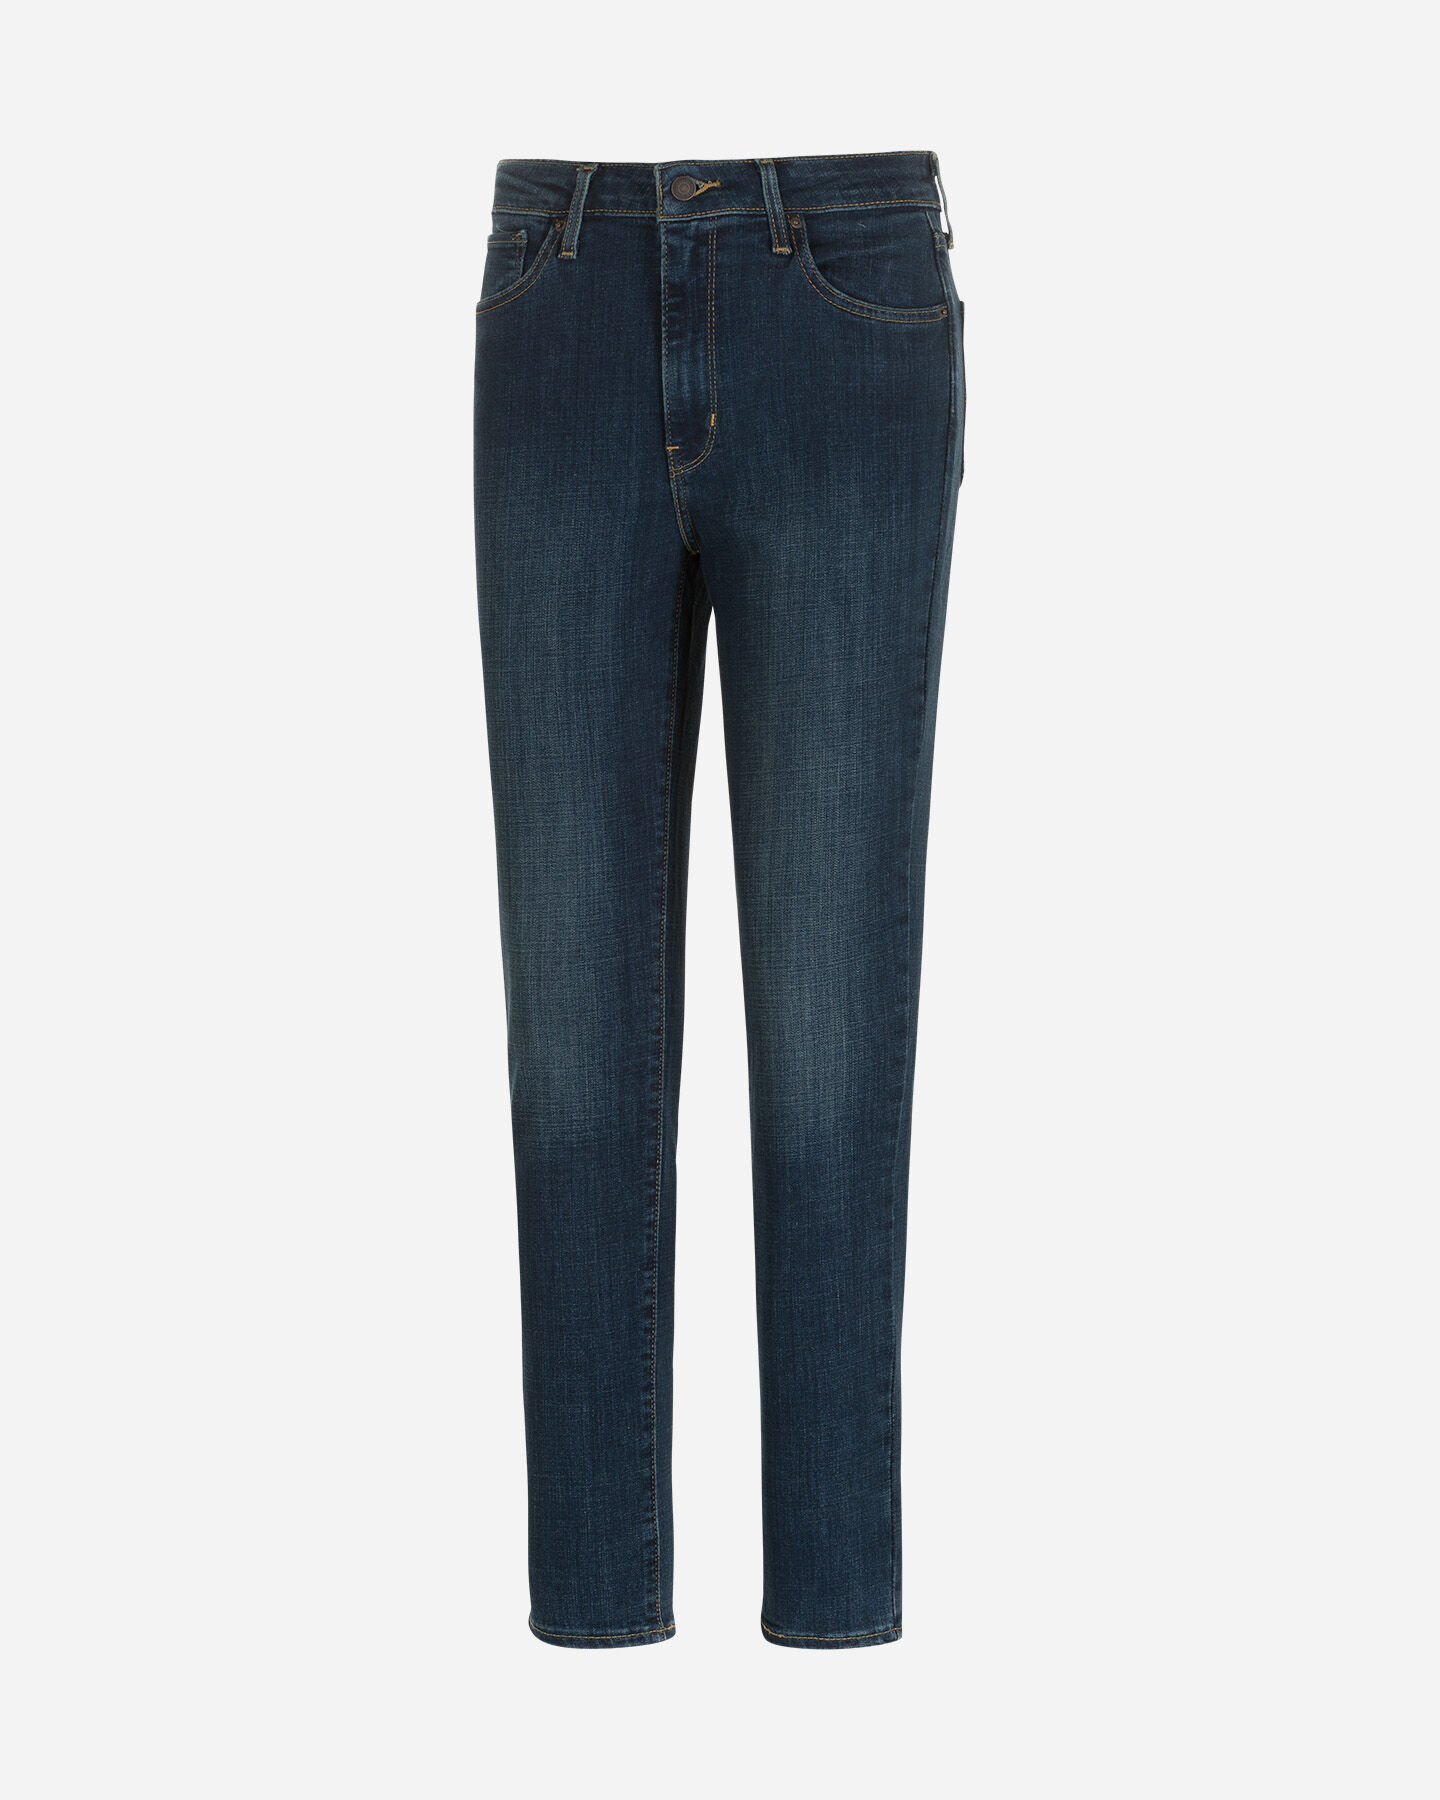  Jeans LEVI'S 721 HIGH RISE SUPER SKINNY L30 DENIM W S4104864|0047|26 scatto 0